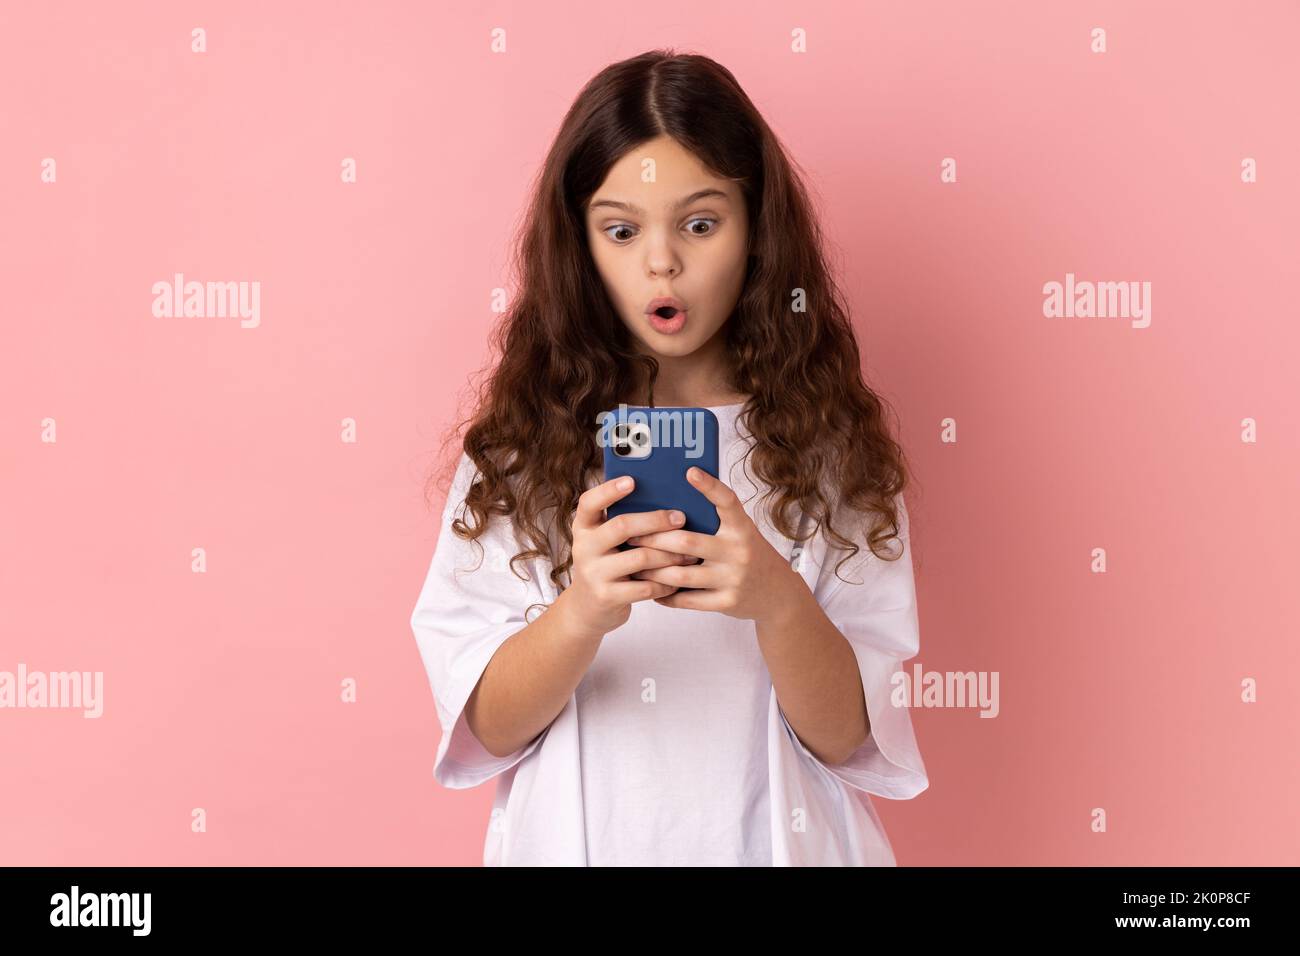 Mobile Verbindung. Porträt eines schockierten erstaunten kleinen Mädchens mit weißem T-Shirt und einem schockierenden Beitrag über das Handy in einem sozialen Netzwerk. Innenaufnahme des Studios isoliert auf rosa Hintergrund. Stockfoto